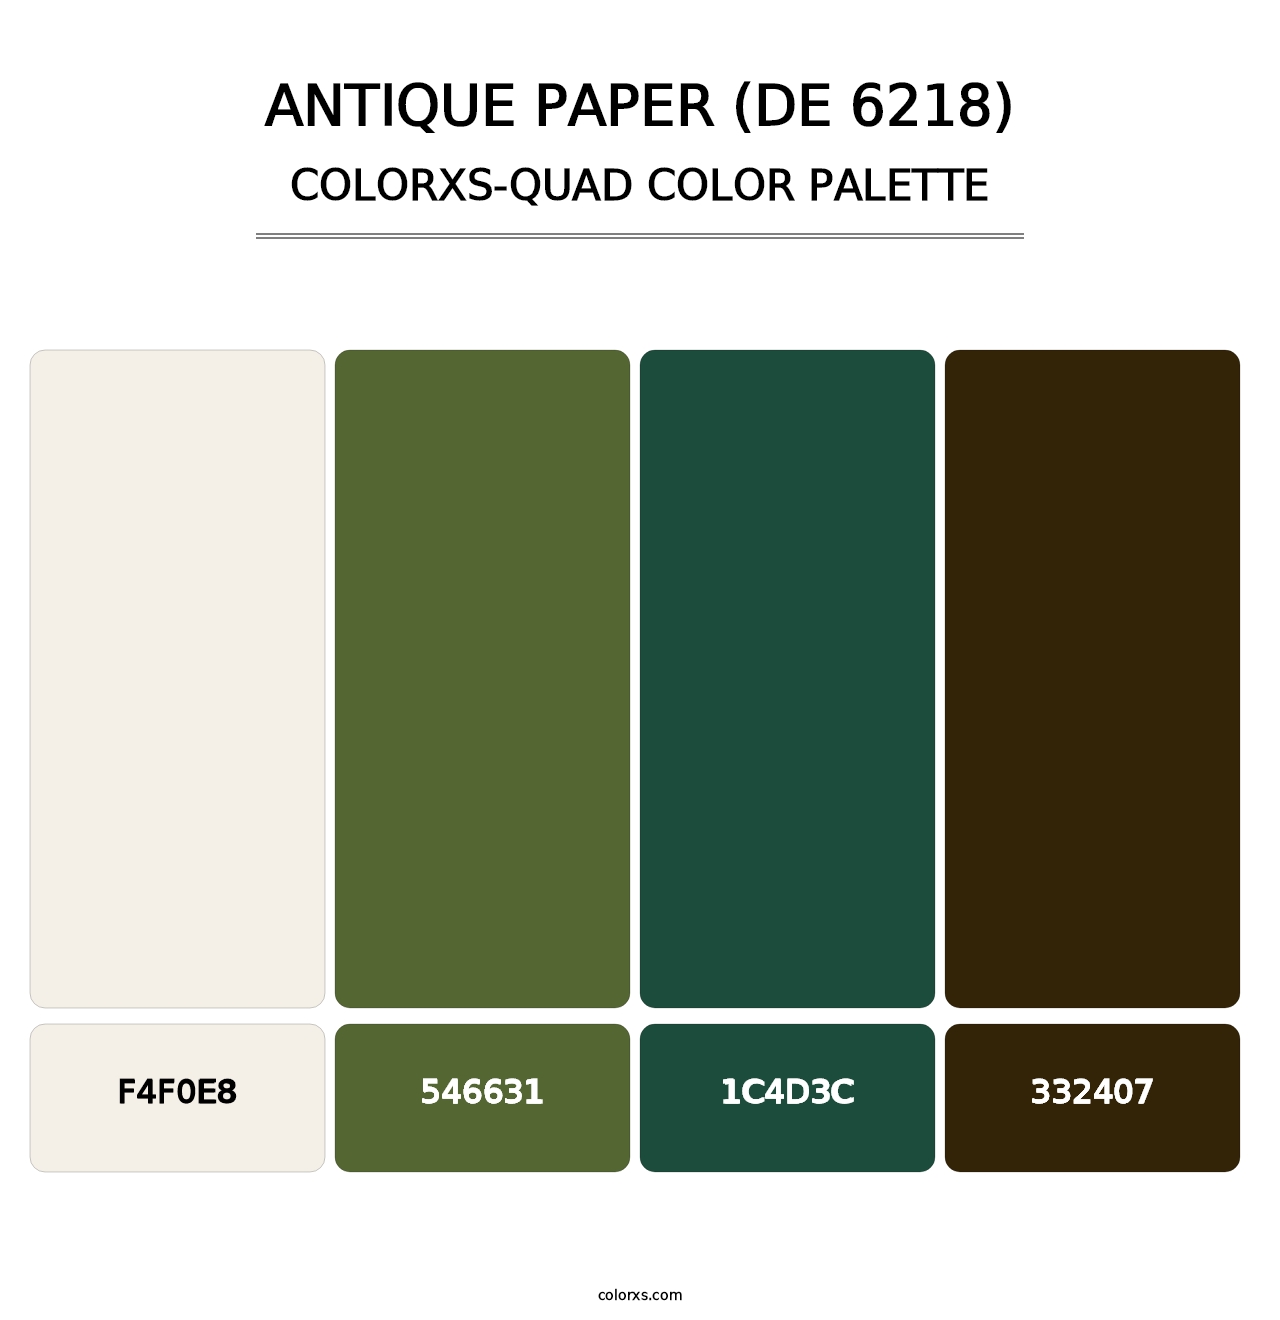 Antique Paper (DE 6218) - Colorxs Quad Palette